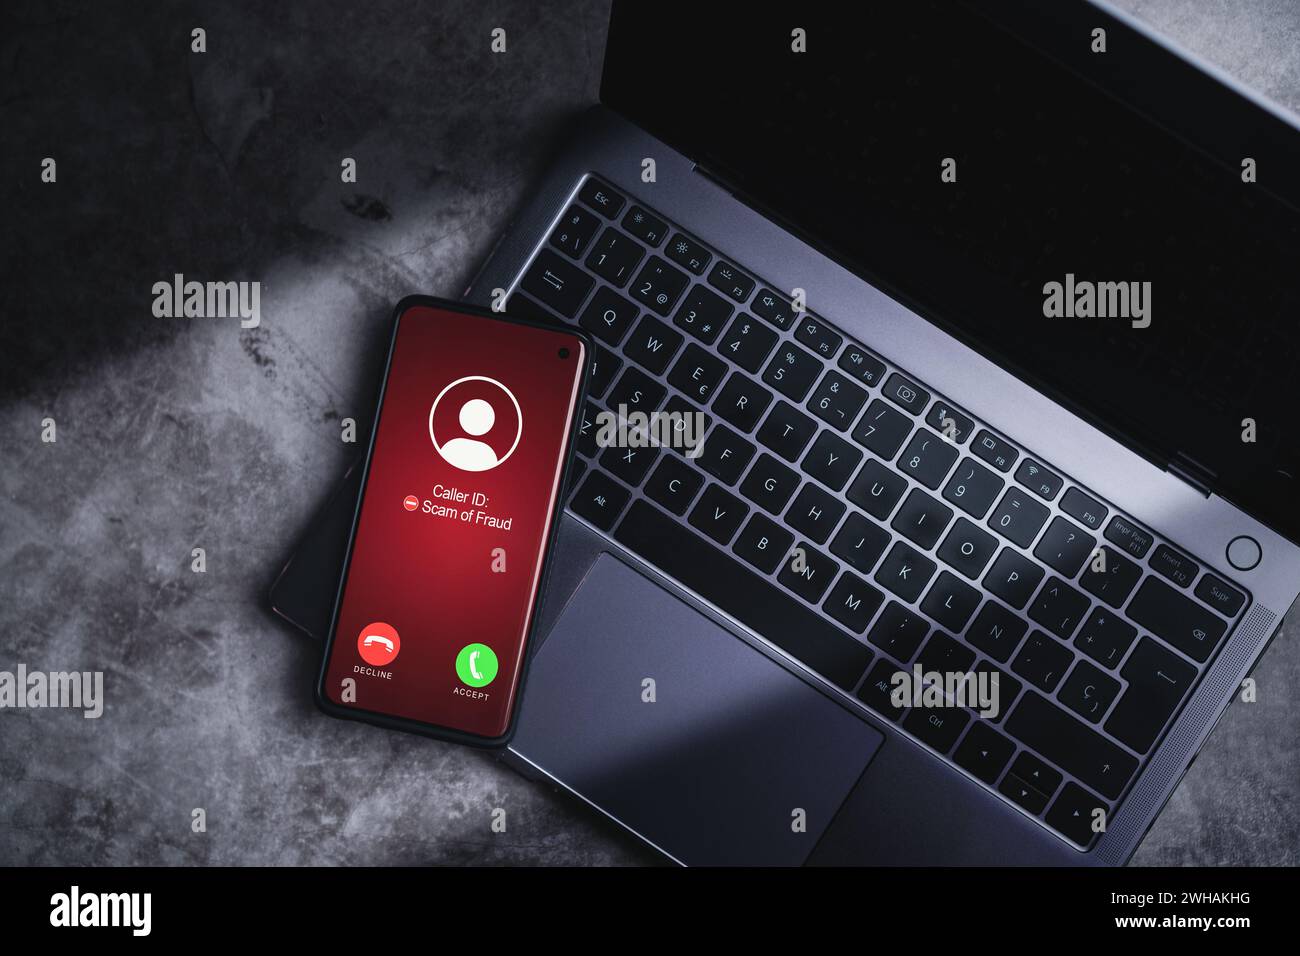 Smartphone empfängt unerwünschte Anrufe, während es sich auf dem Laptop ruht. Konzept für Spam, Betrug, Phishing und Betrug. Sicherheitstechnologie. Stockfoto